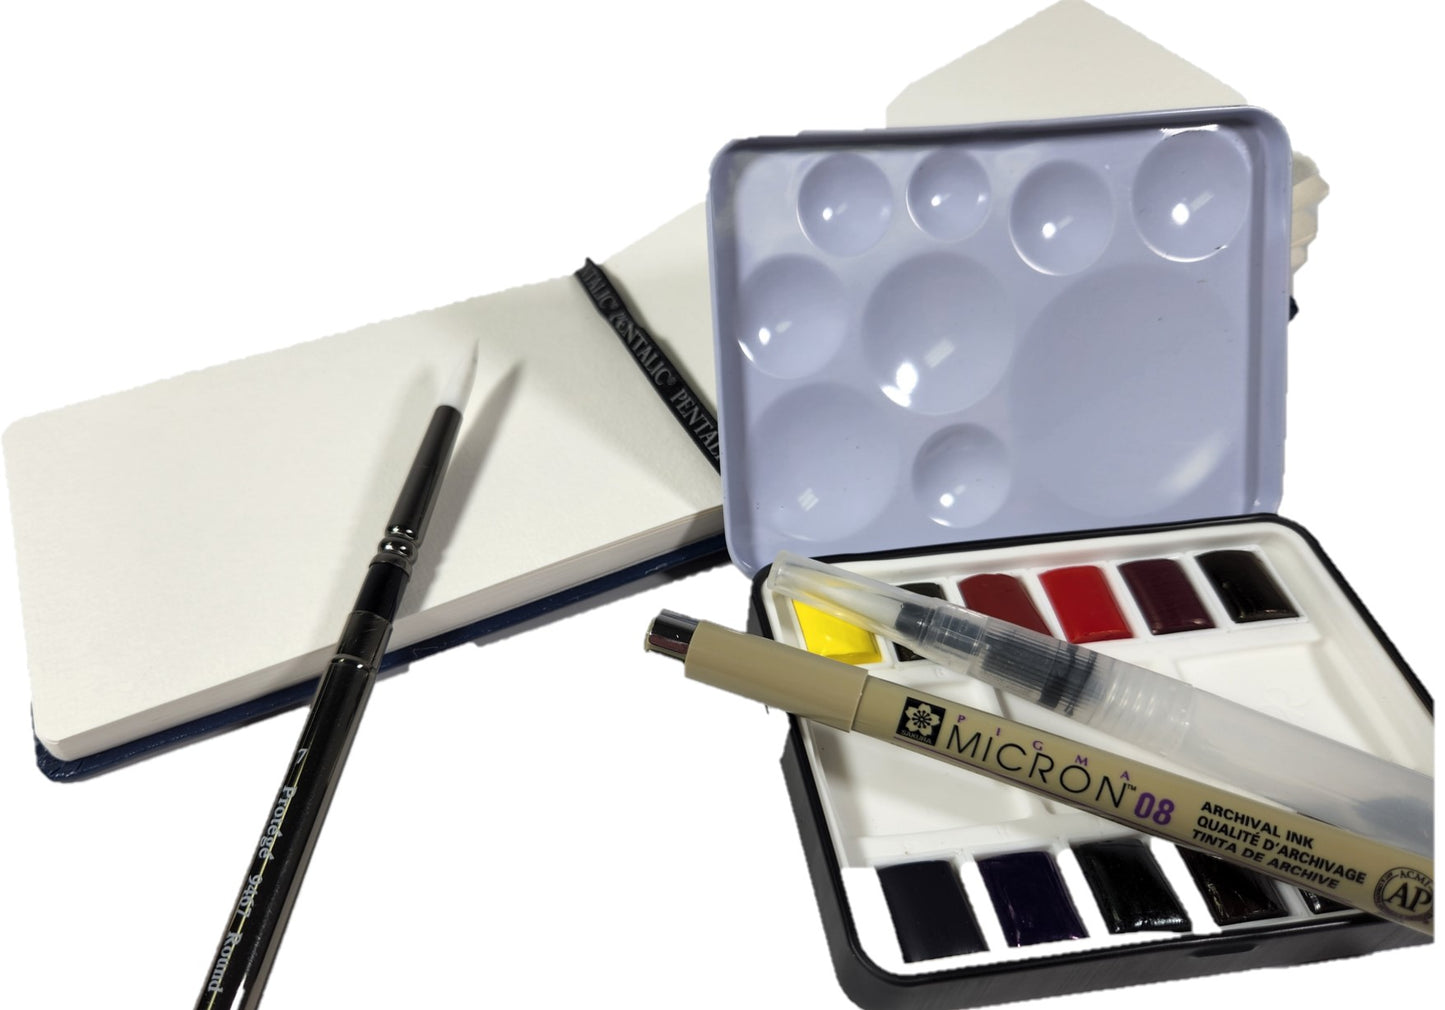 QoR Watercolor Set Merchandiser Setup 1A - Expansion Setup